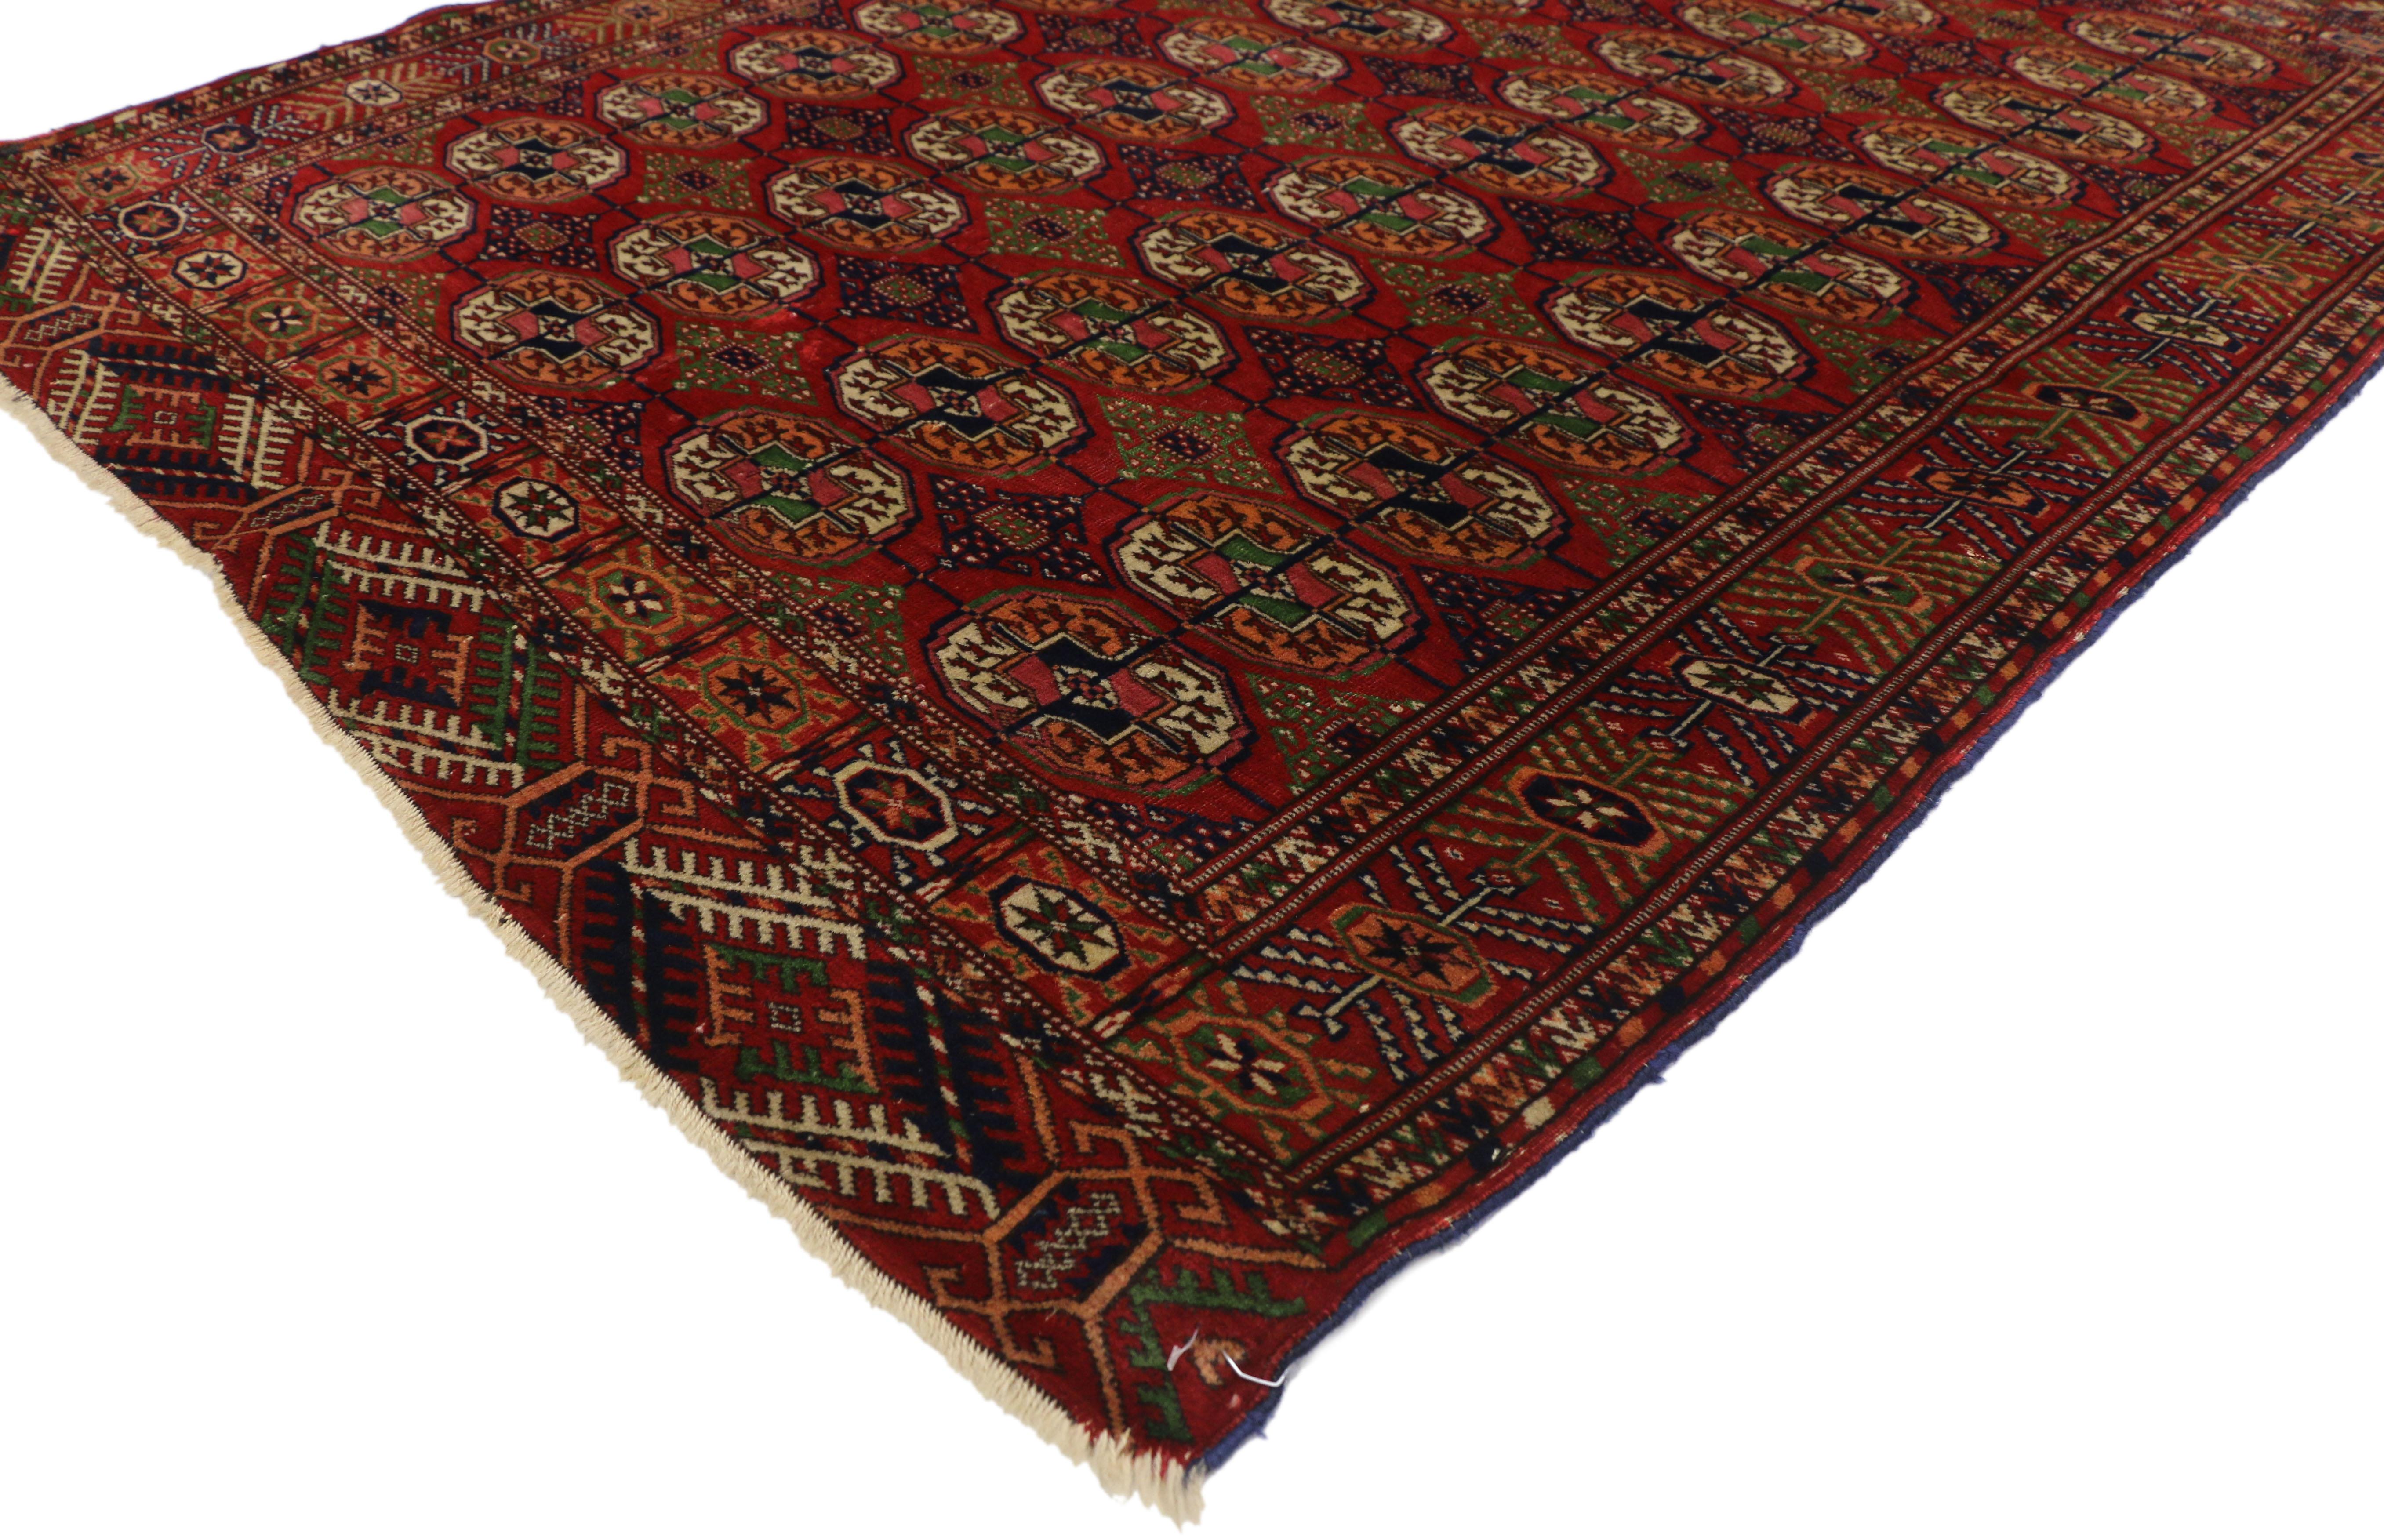 72745, alter turkmenischer Teppich mit modernem Tribal-Stil, Tekke-Akzentteppich. Dieser handgeknüpfte alte turkmenische Wollteppich zeigt vier vertikale Säulen des Tekke-Güls mit sekundären kreuzförmigen Güls, wie sie von turkmenischen Stämmen